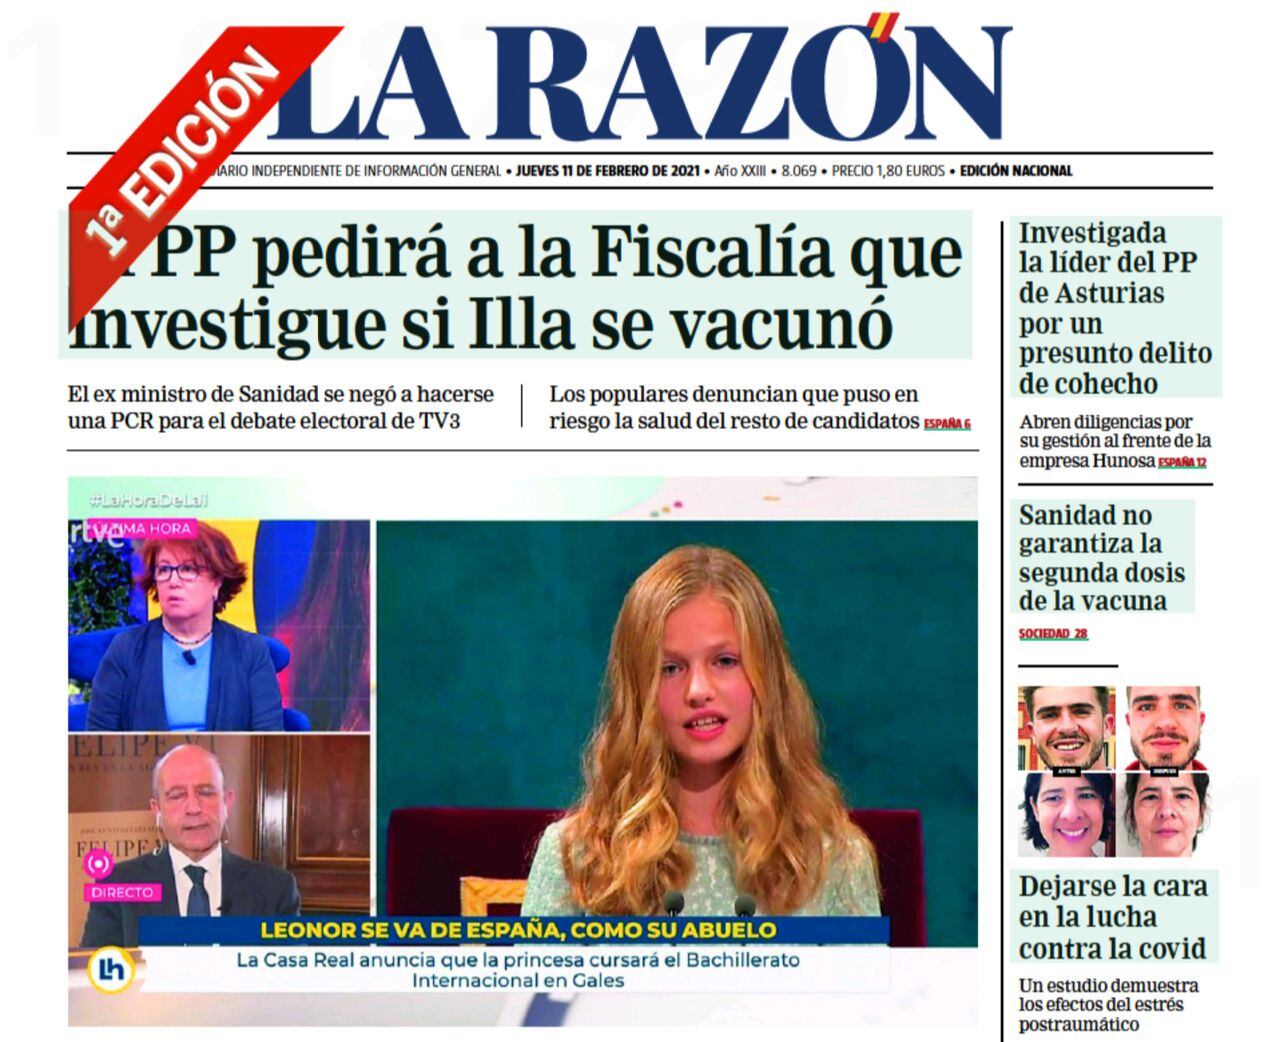 El diario La Razón destacó en portada el incidente, que surge cuando se discute la despenalización de las injurias contra la corona.